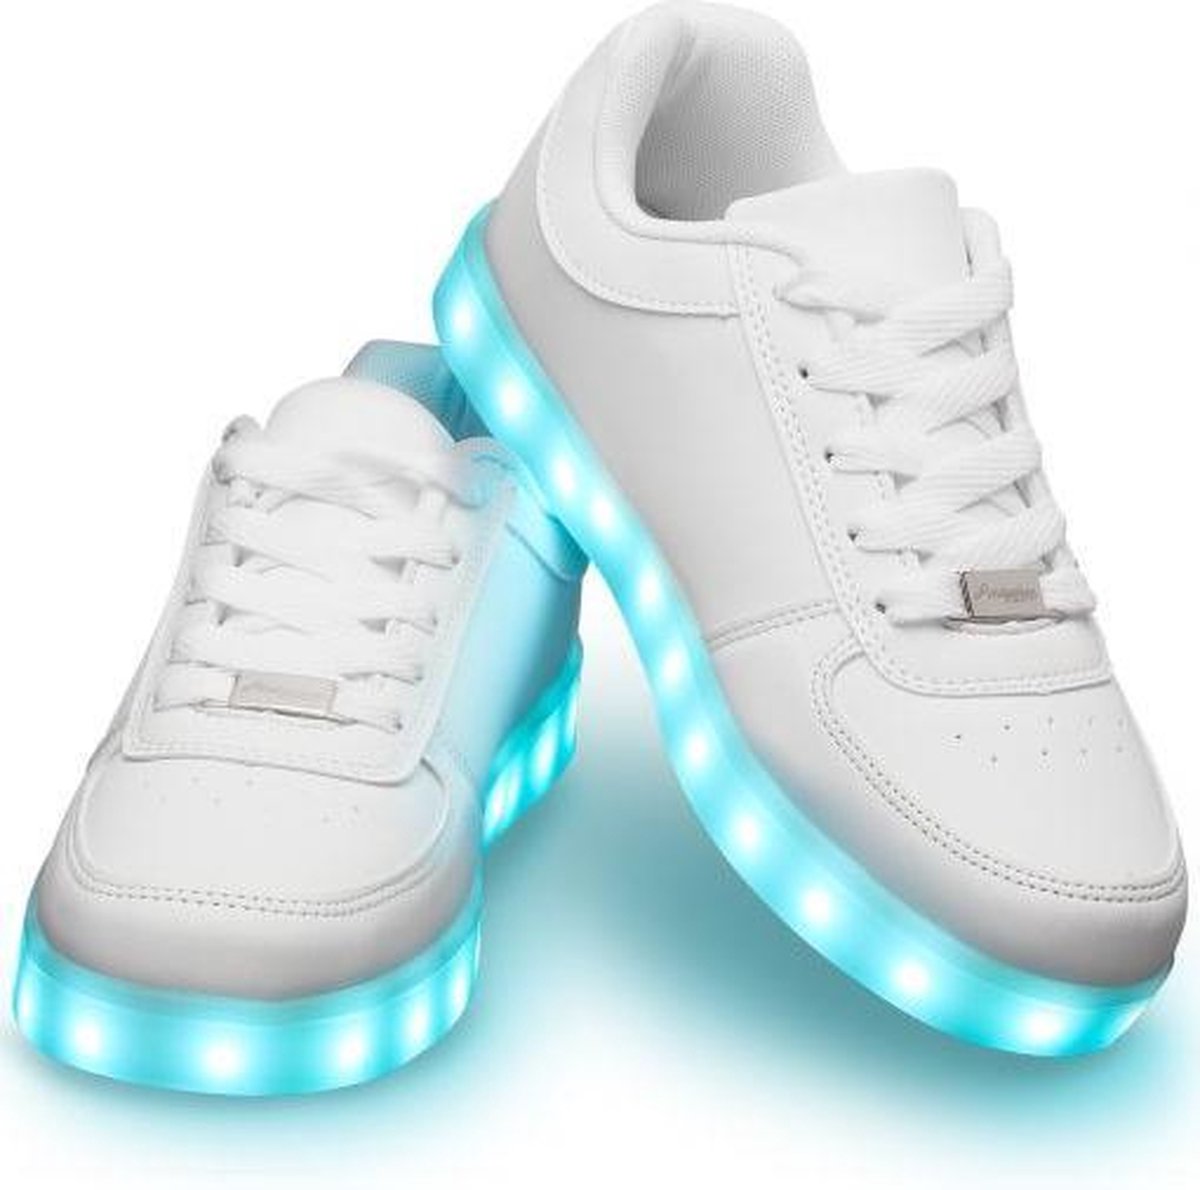 Schoenen met lichtjes - Lichtgevende led schoenen - Wit - Maat 41